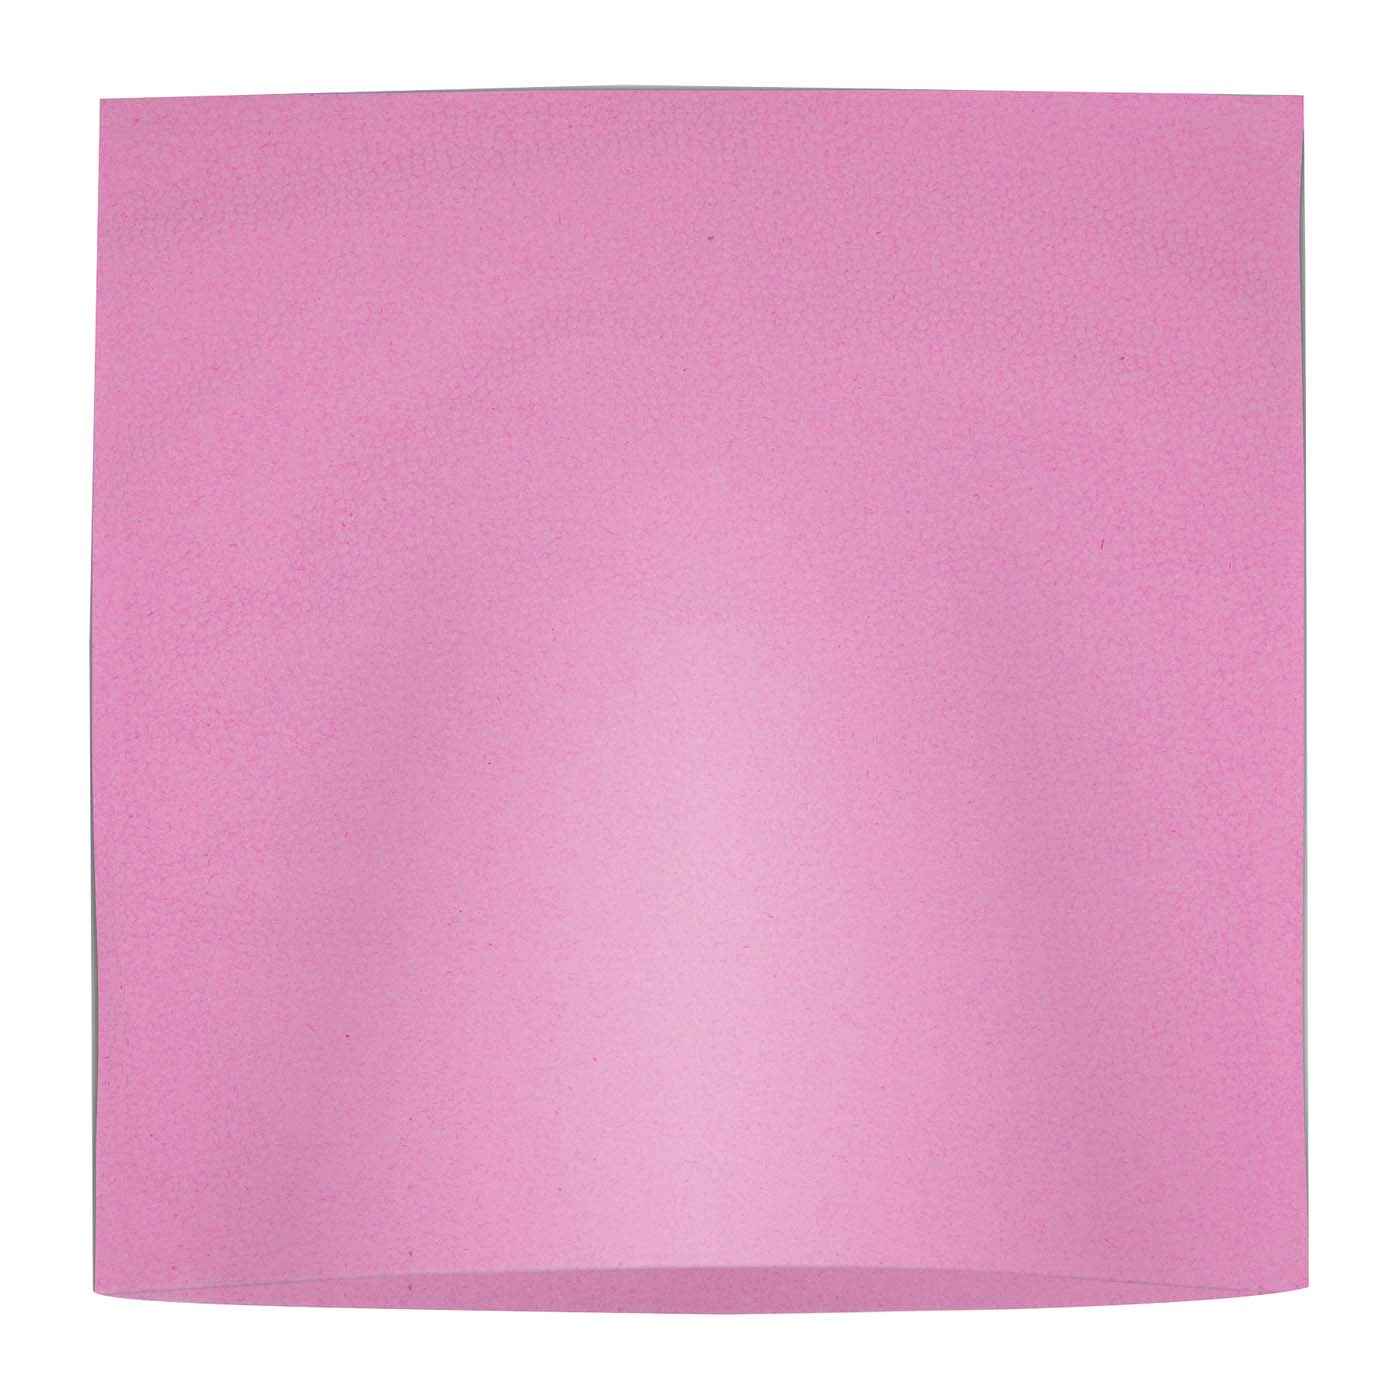 Medicom® SafeBasics™ Kopfschutztaschen Karton 500 Stück pink, 25 x 25 cm